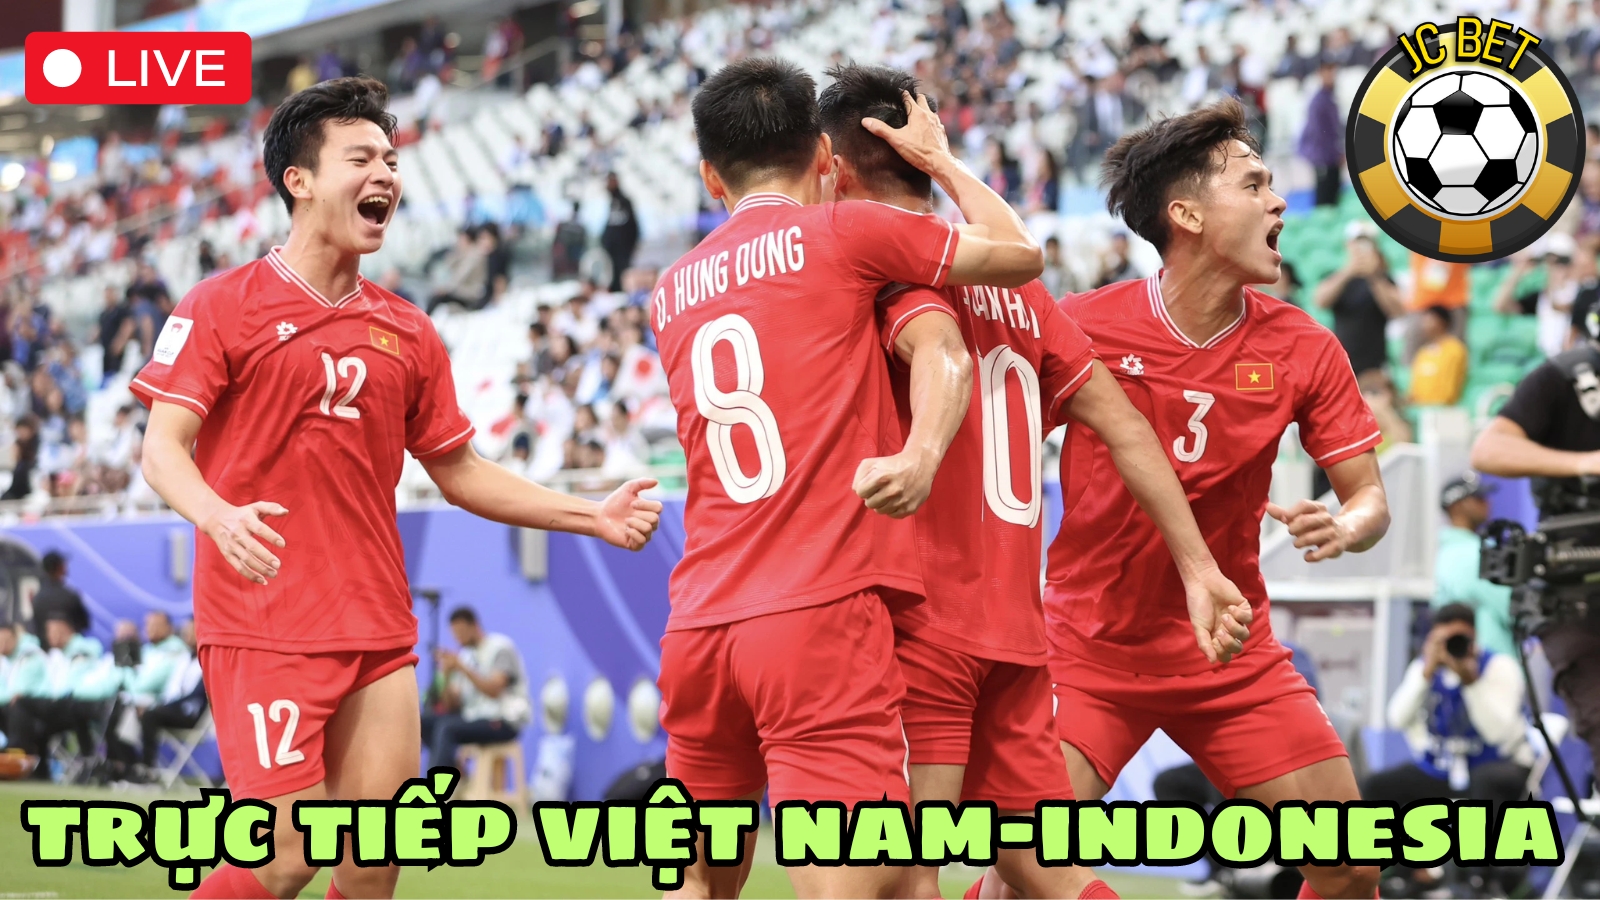 Trực tiếp việt nam-indonesia vòng loại world cup